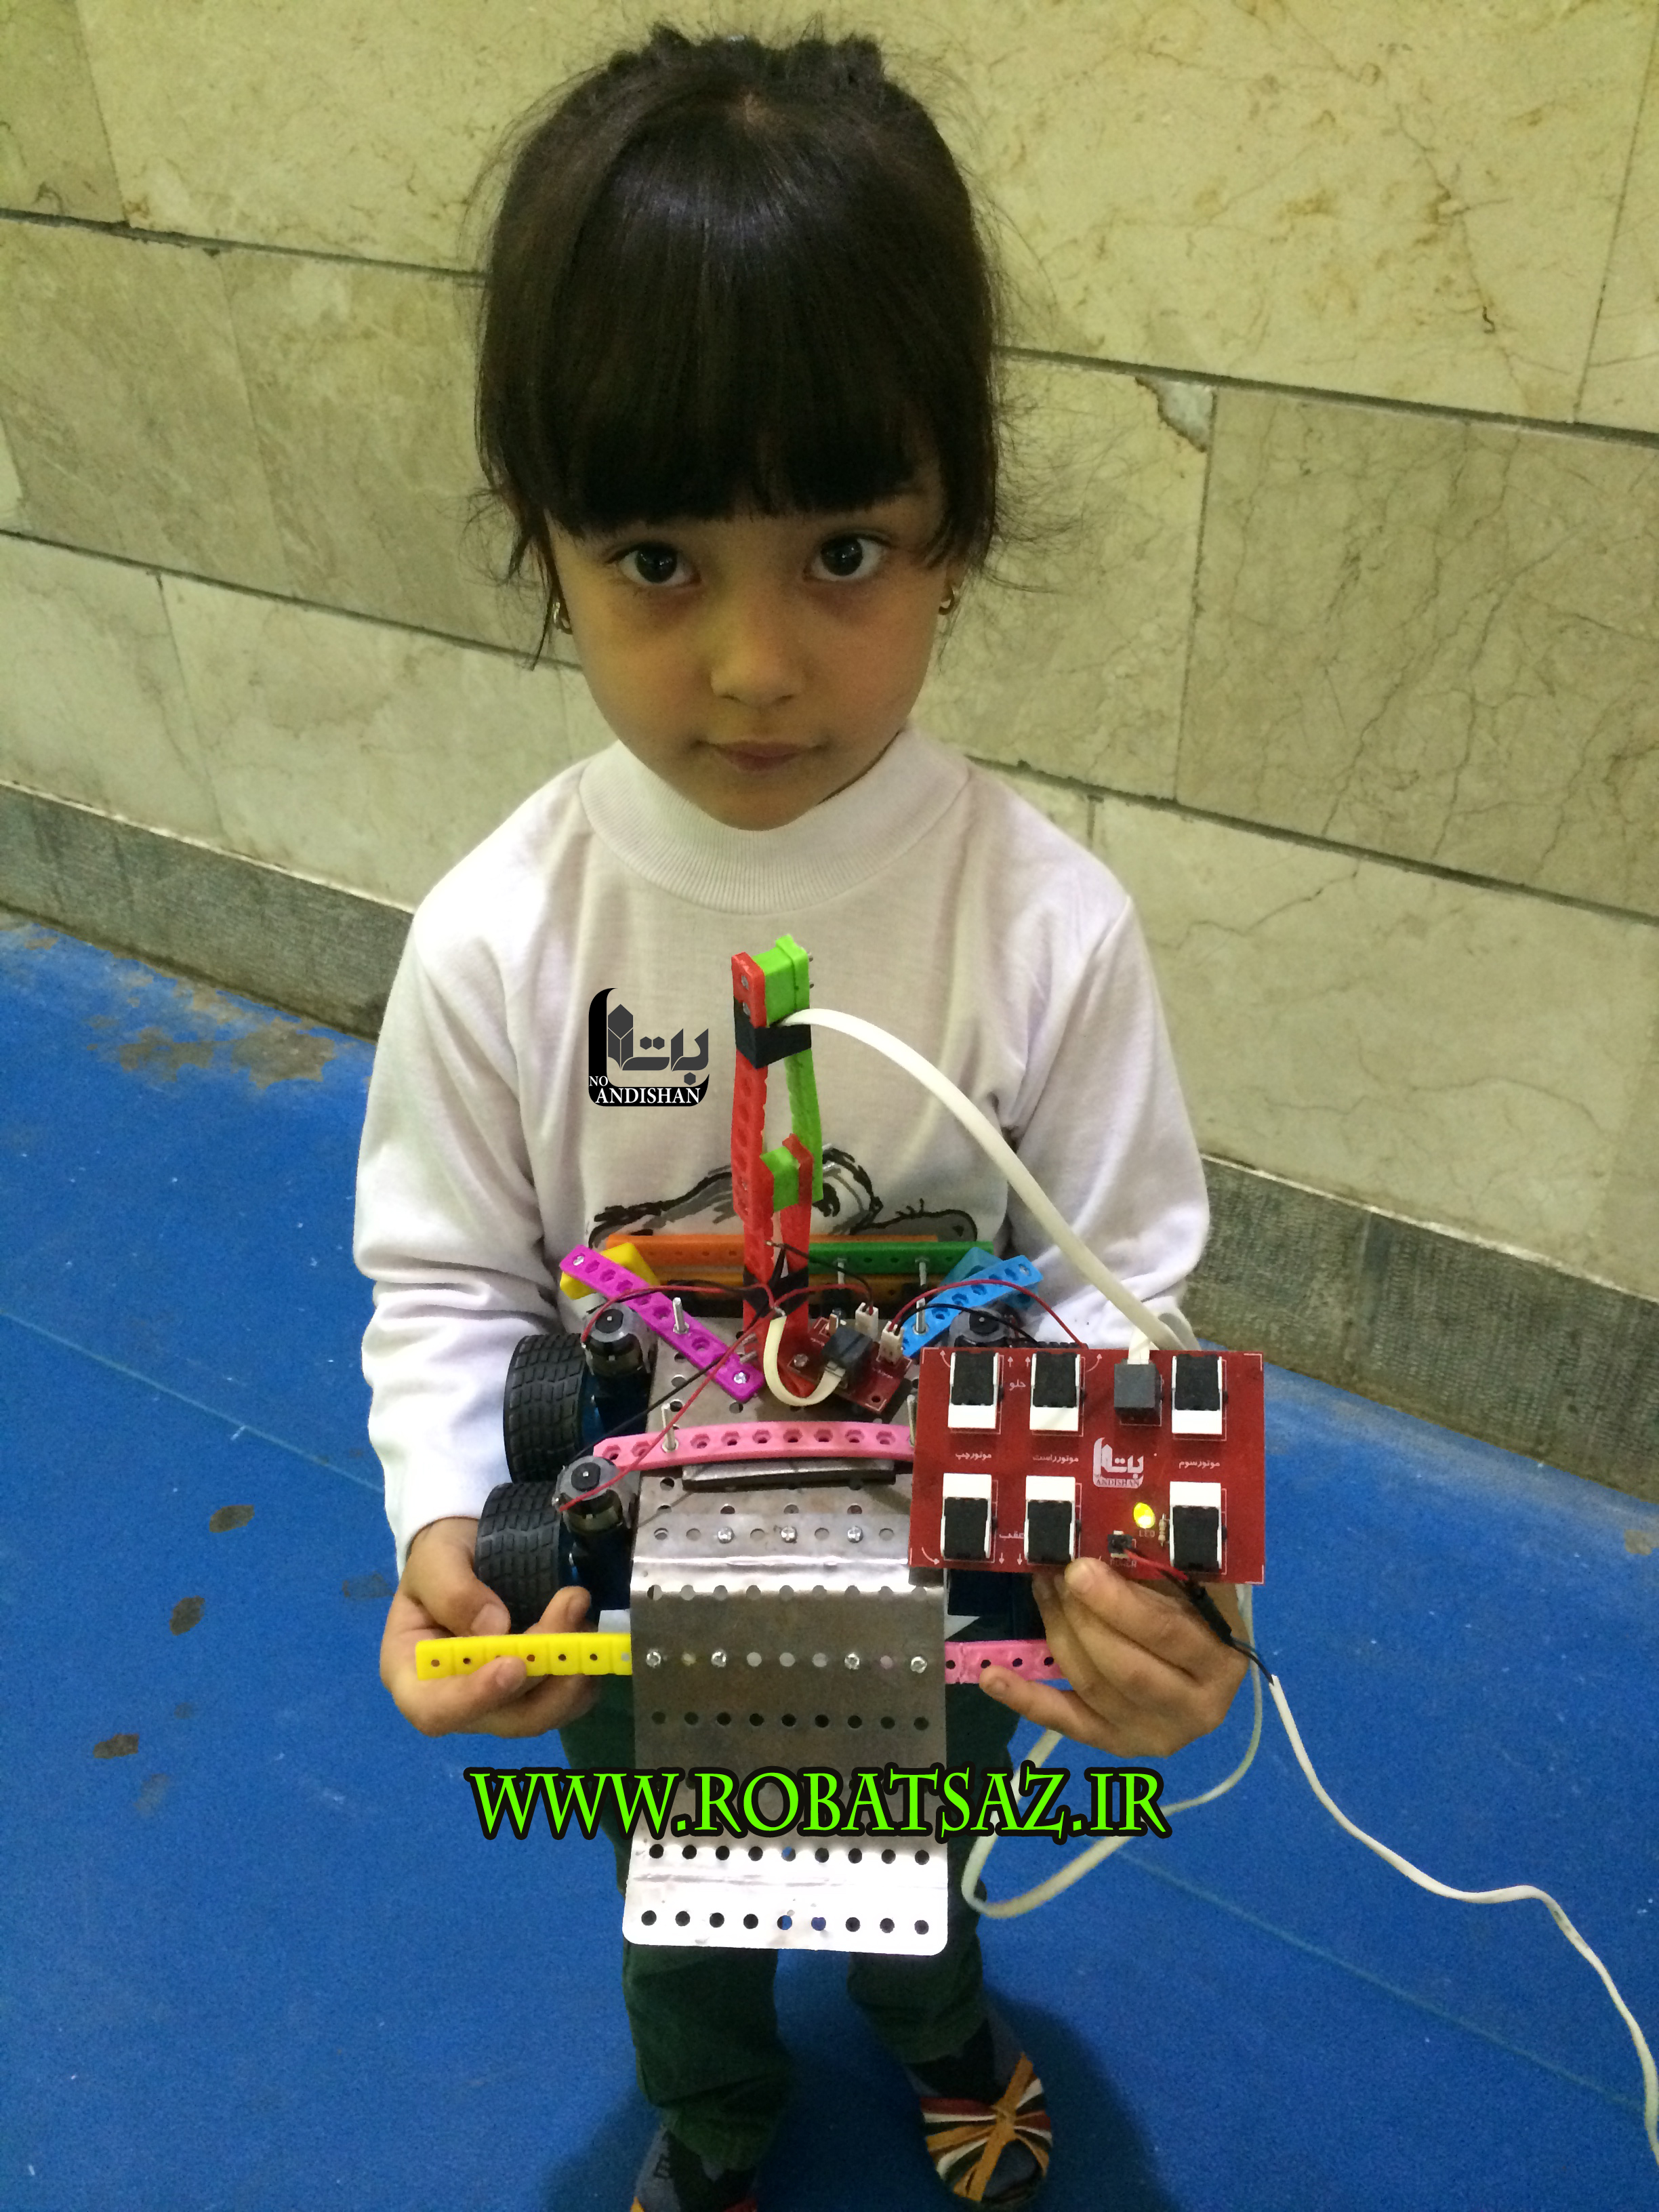  دختر کوچولوی ربات ساز آماده شرکت در مسابقه جنگ ربات ها 